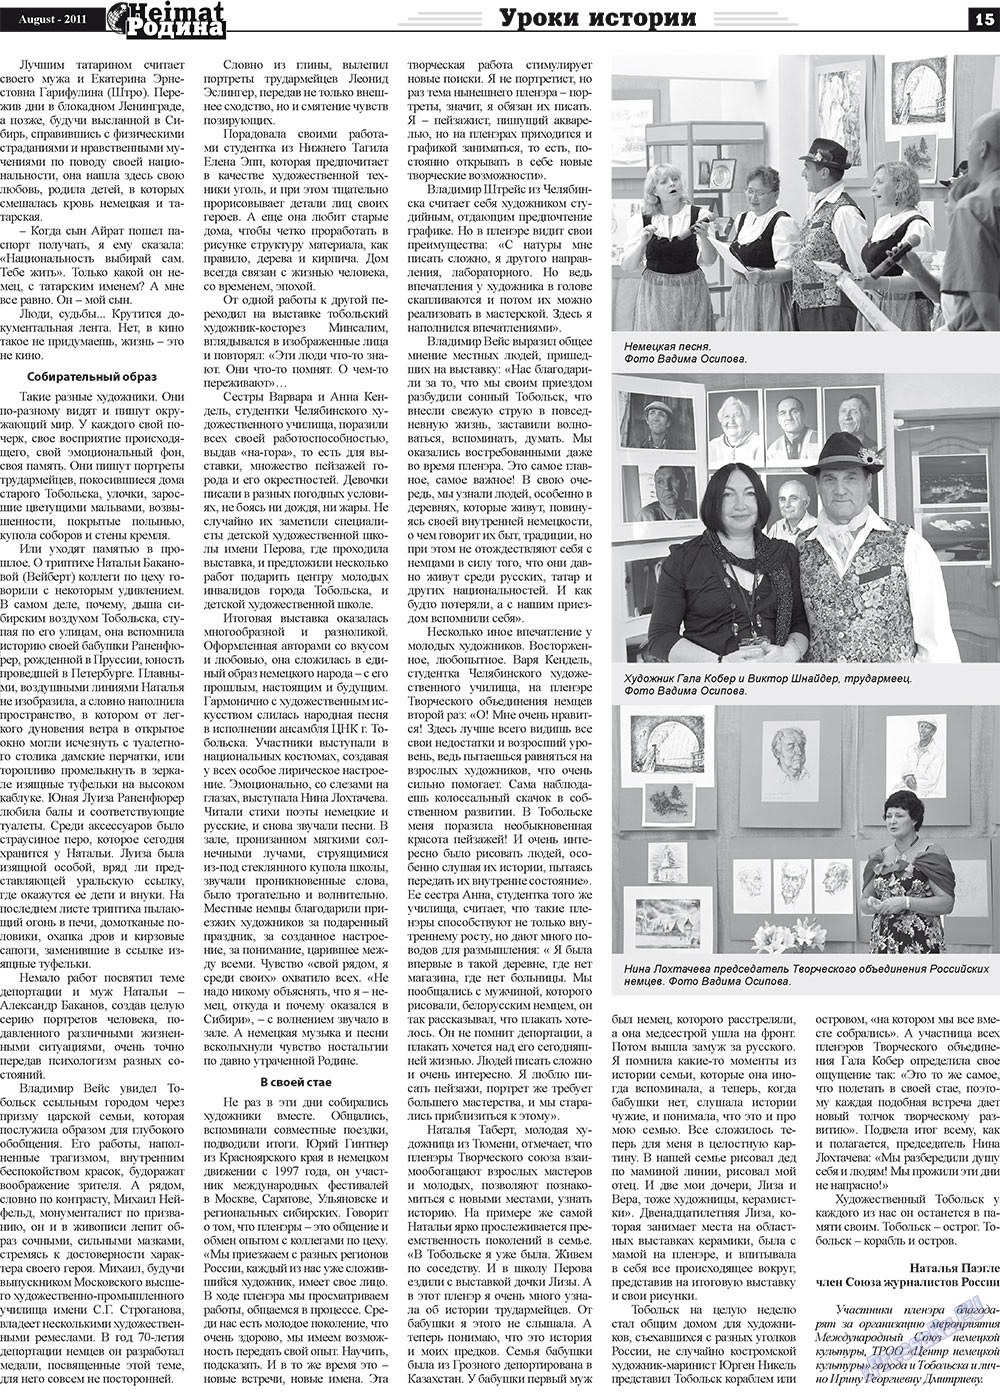 Heimat-Родина (газета). 2011 год, номер 8, стр. 15